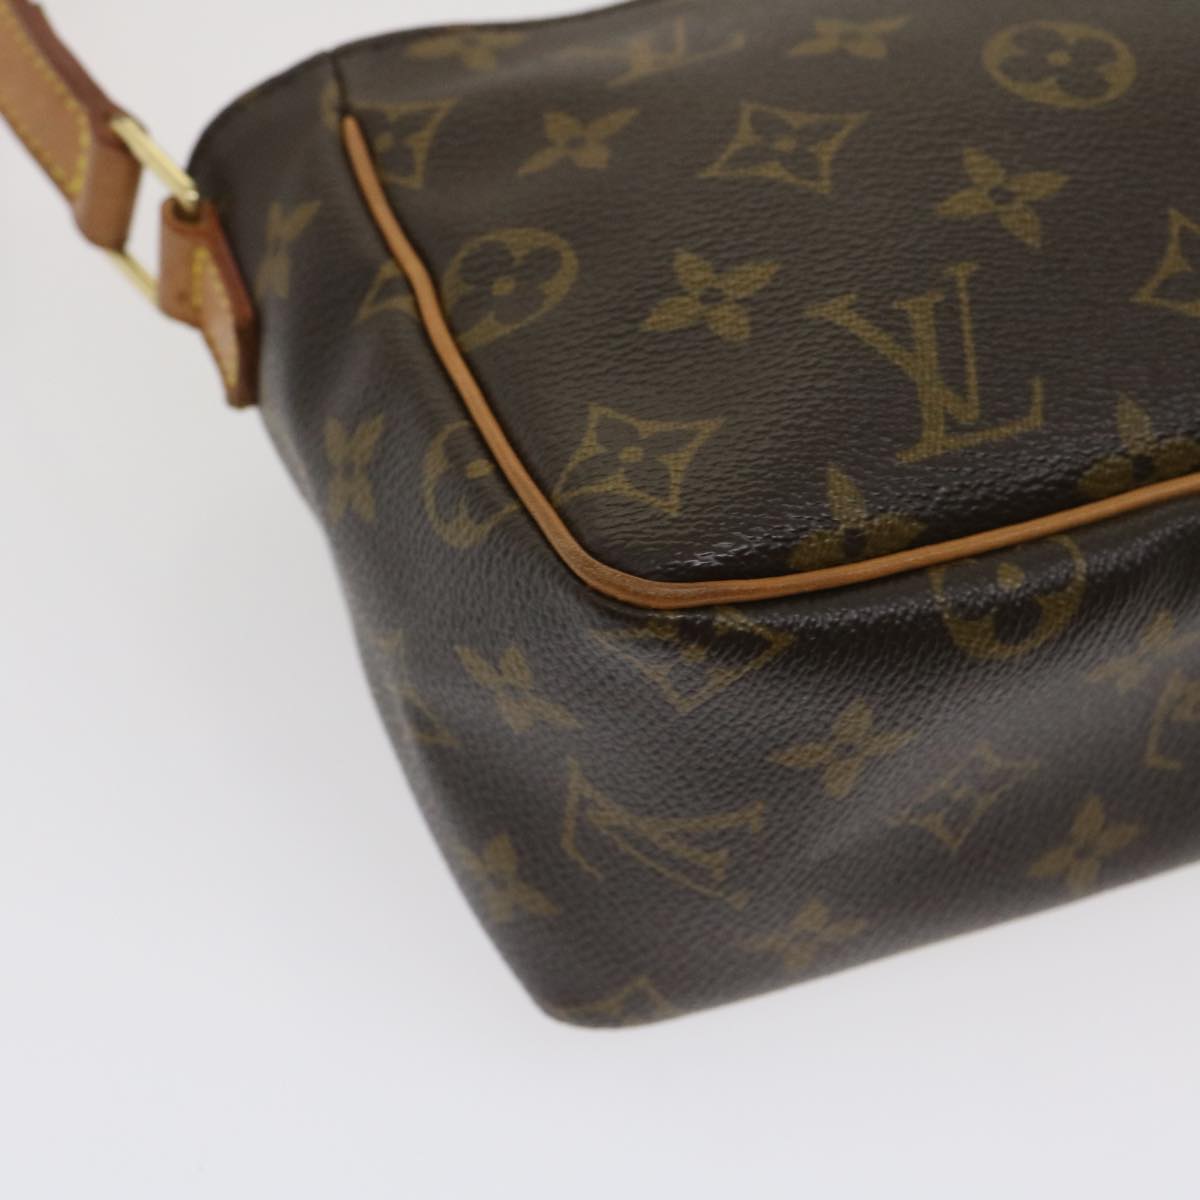 Louis Vuitton Monogram Viva Cite Pm Shoulder Bag M51165 Lv Auth Am2556g